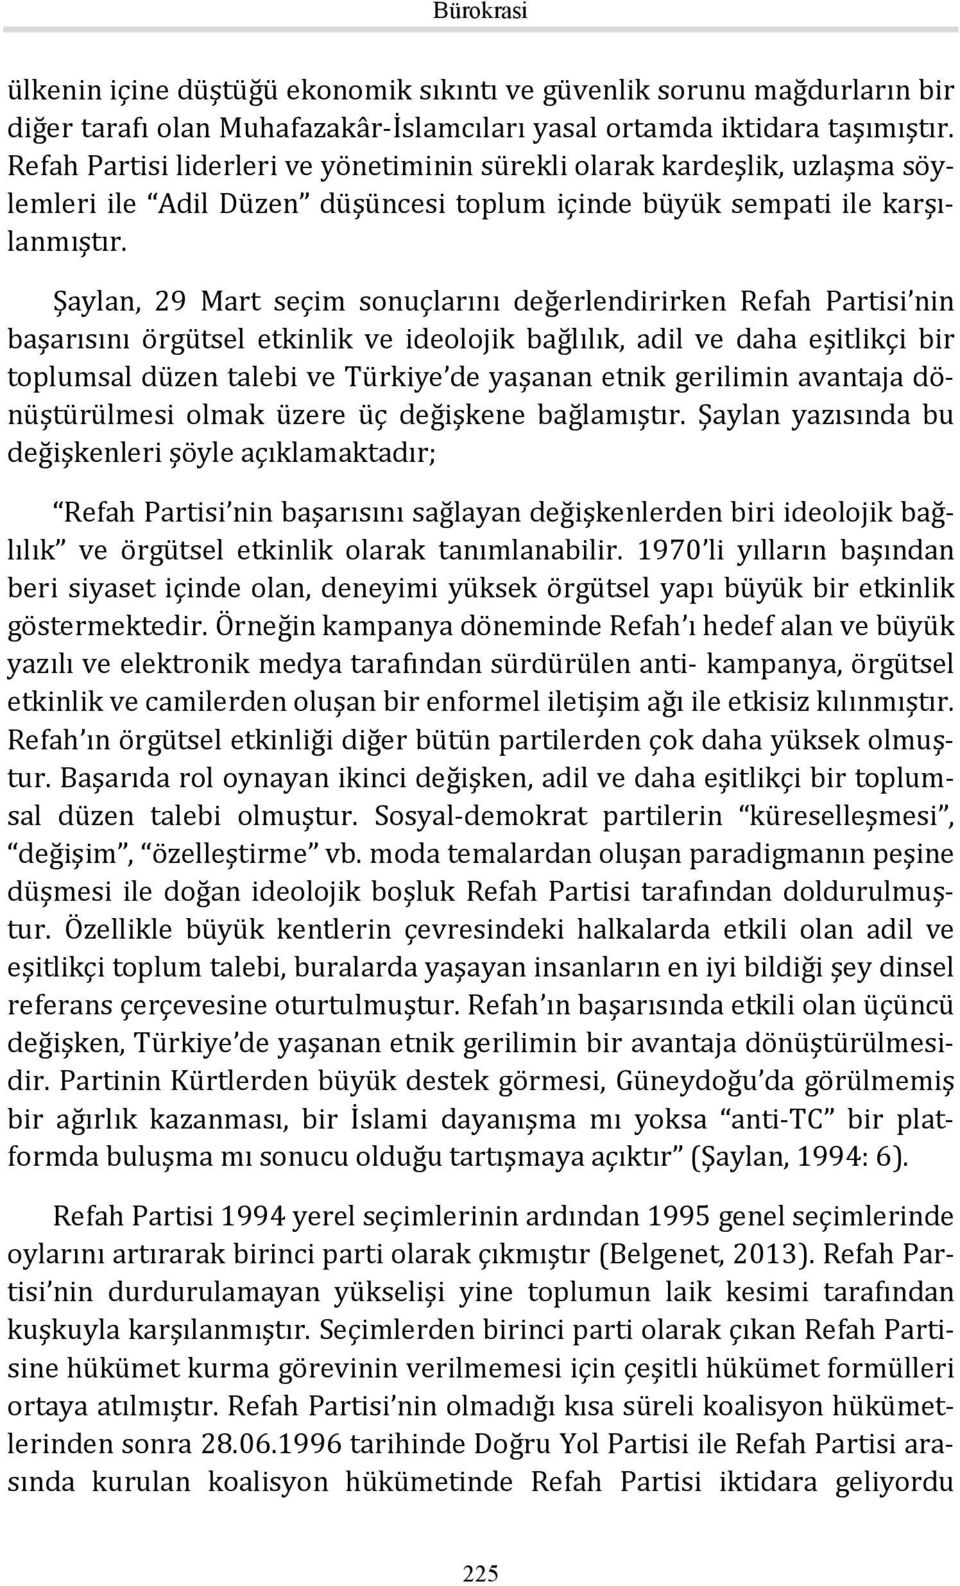 Şaylan, 29 Mart seçim sonuçlarını değerlendirirken Refah Partisi nin başarısını örgütsel etkinlik ve ideolojik bağlılık, adil ve daha eşitlikçi bir toplumsal düzen talebi ve Türkiye de yaşanan etnik